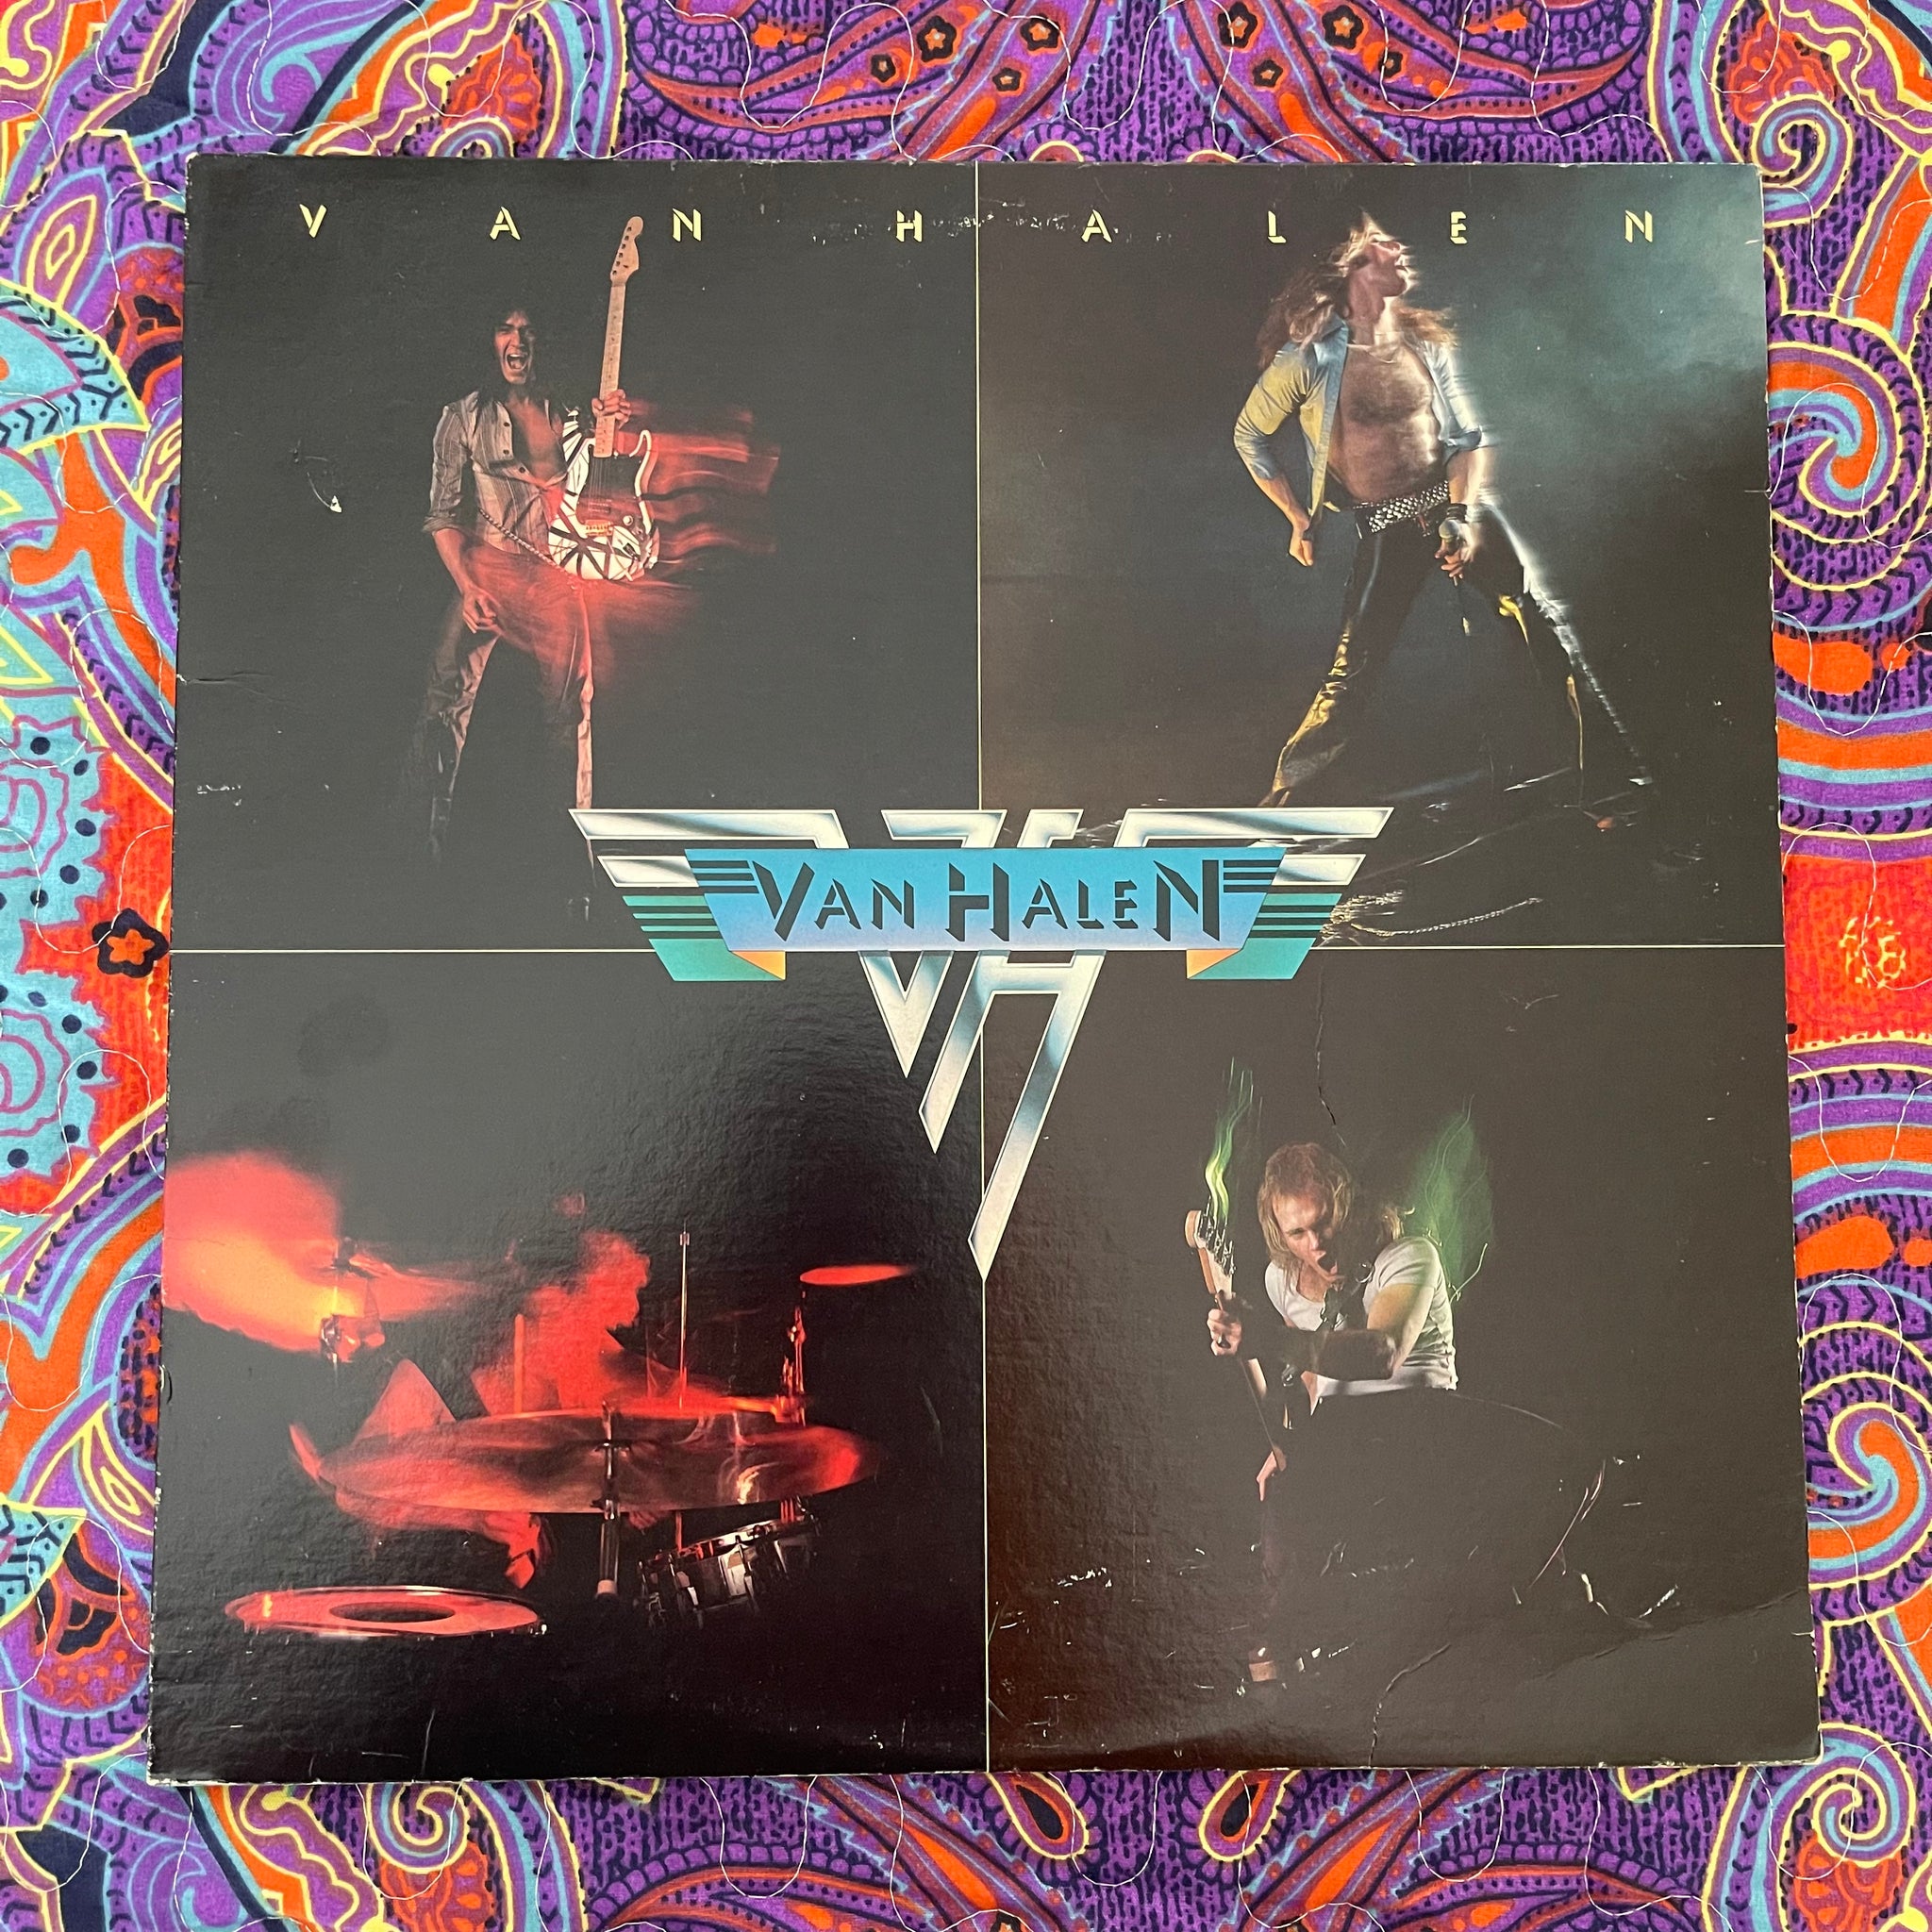 Van Halen-Van Halen